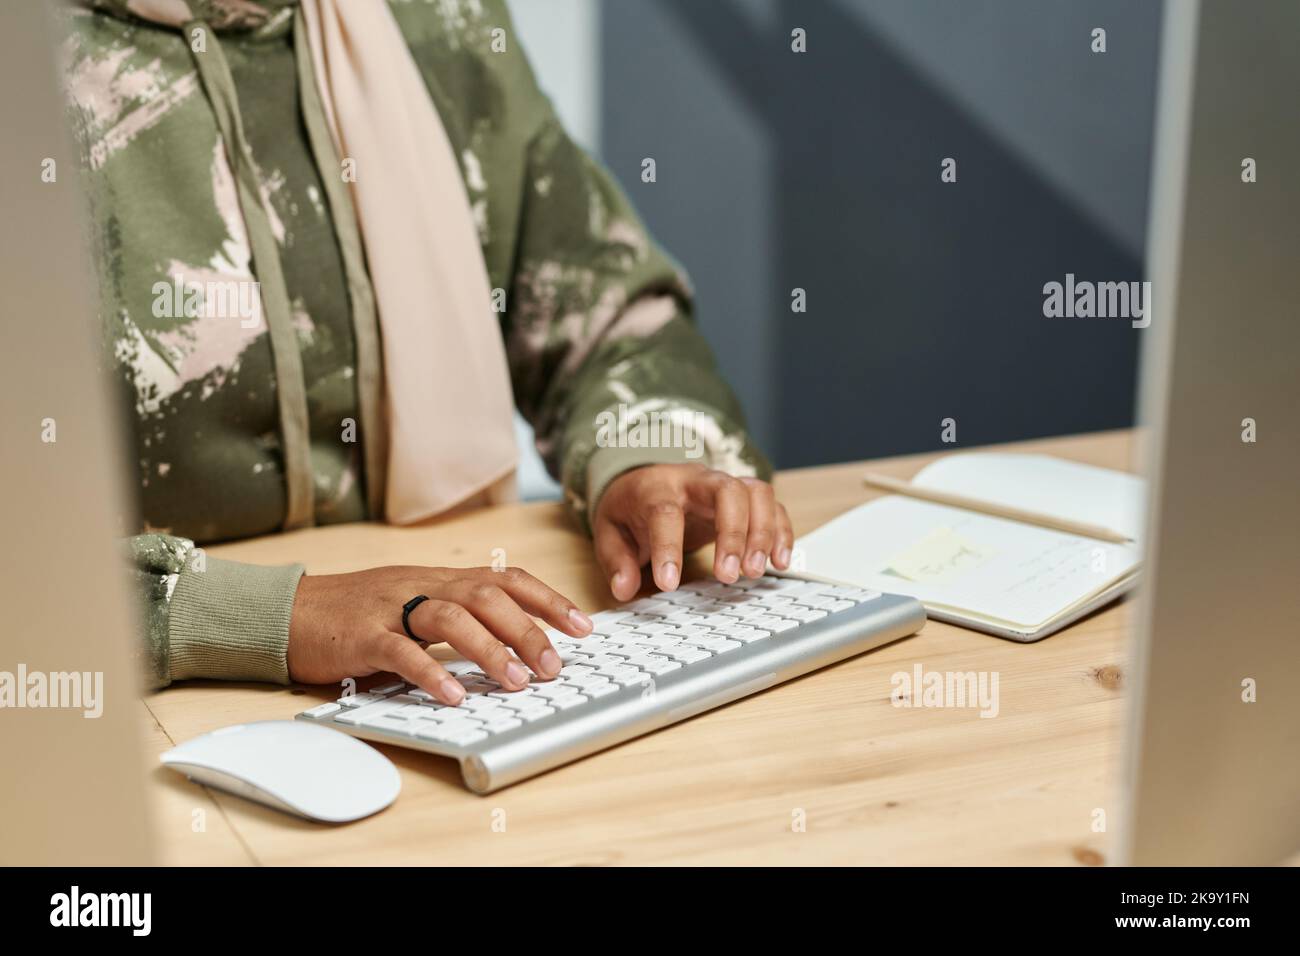 Hände einer jungen muslimischen Geschäftsfrau in der Freizeitkleidung, die auf der Computertastatur tippt, während sie neue Software entwickelt Stockfoto